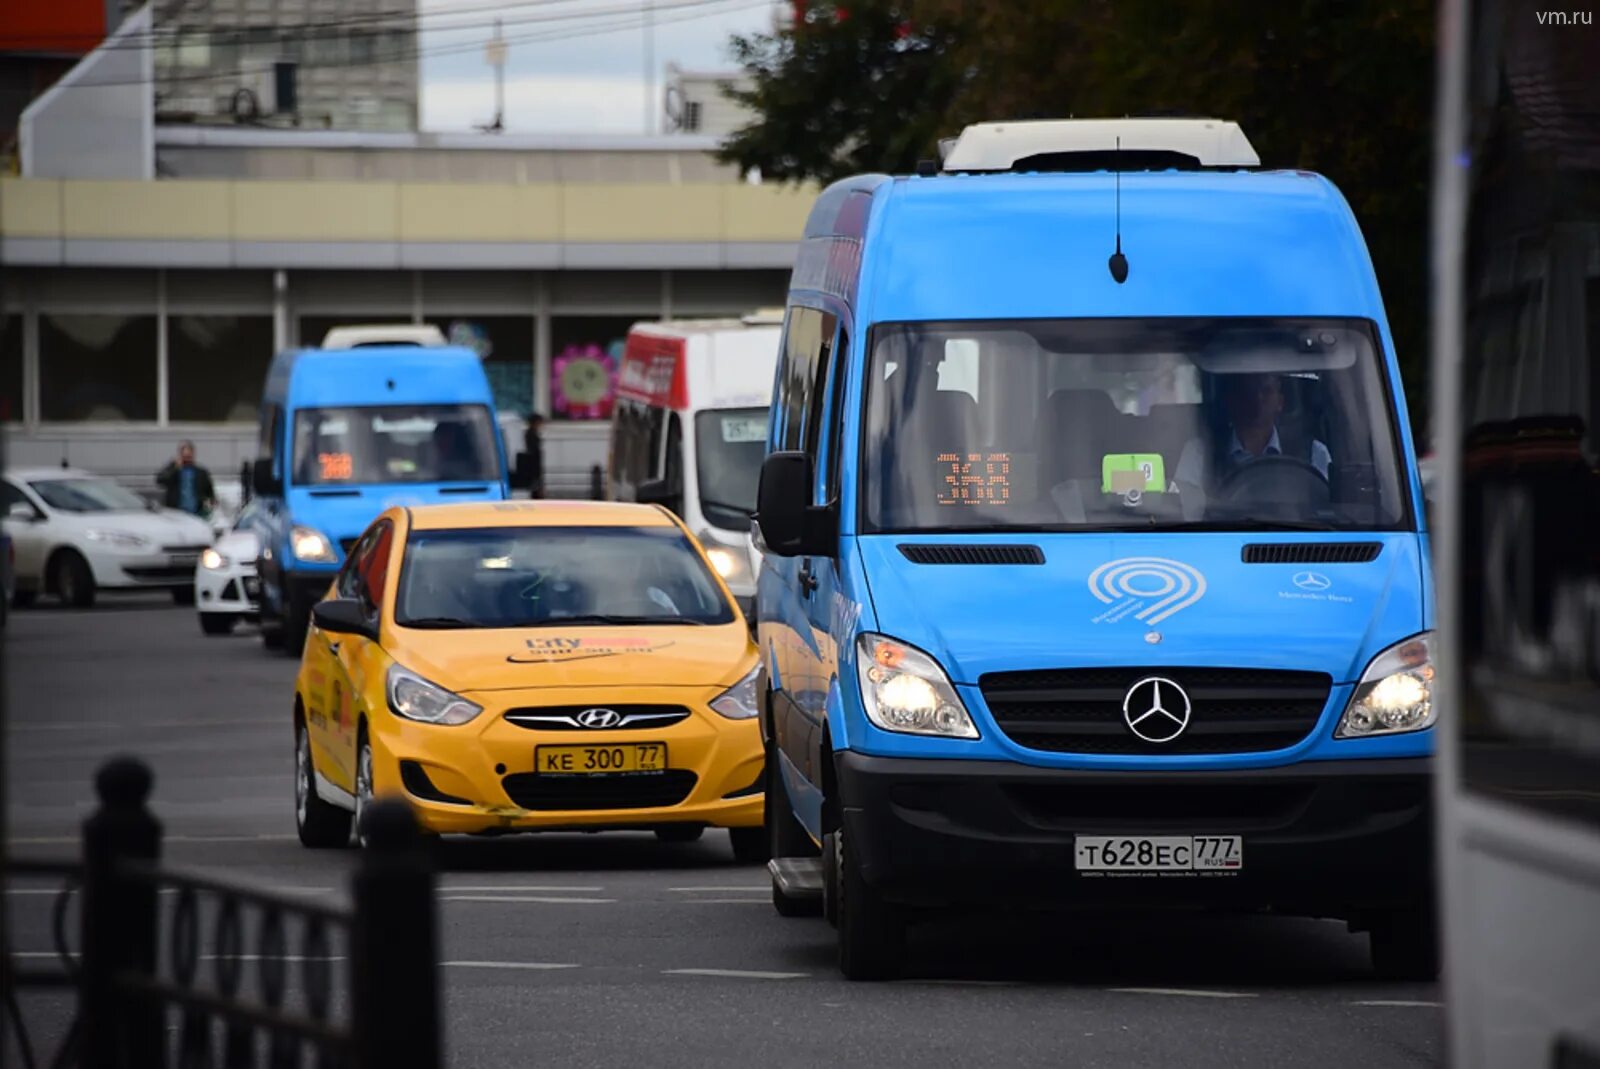 Fiat Ducato автобус Мосгортранс. Общественный транспорт такси. Маршрутное такси в Москве. Автобус и автомобиль.